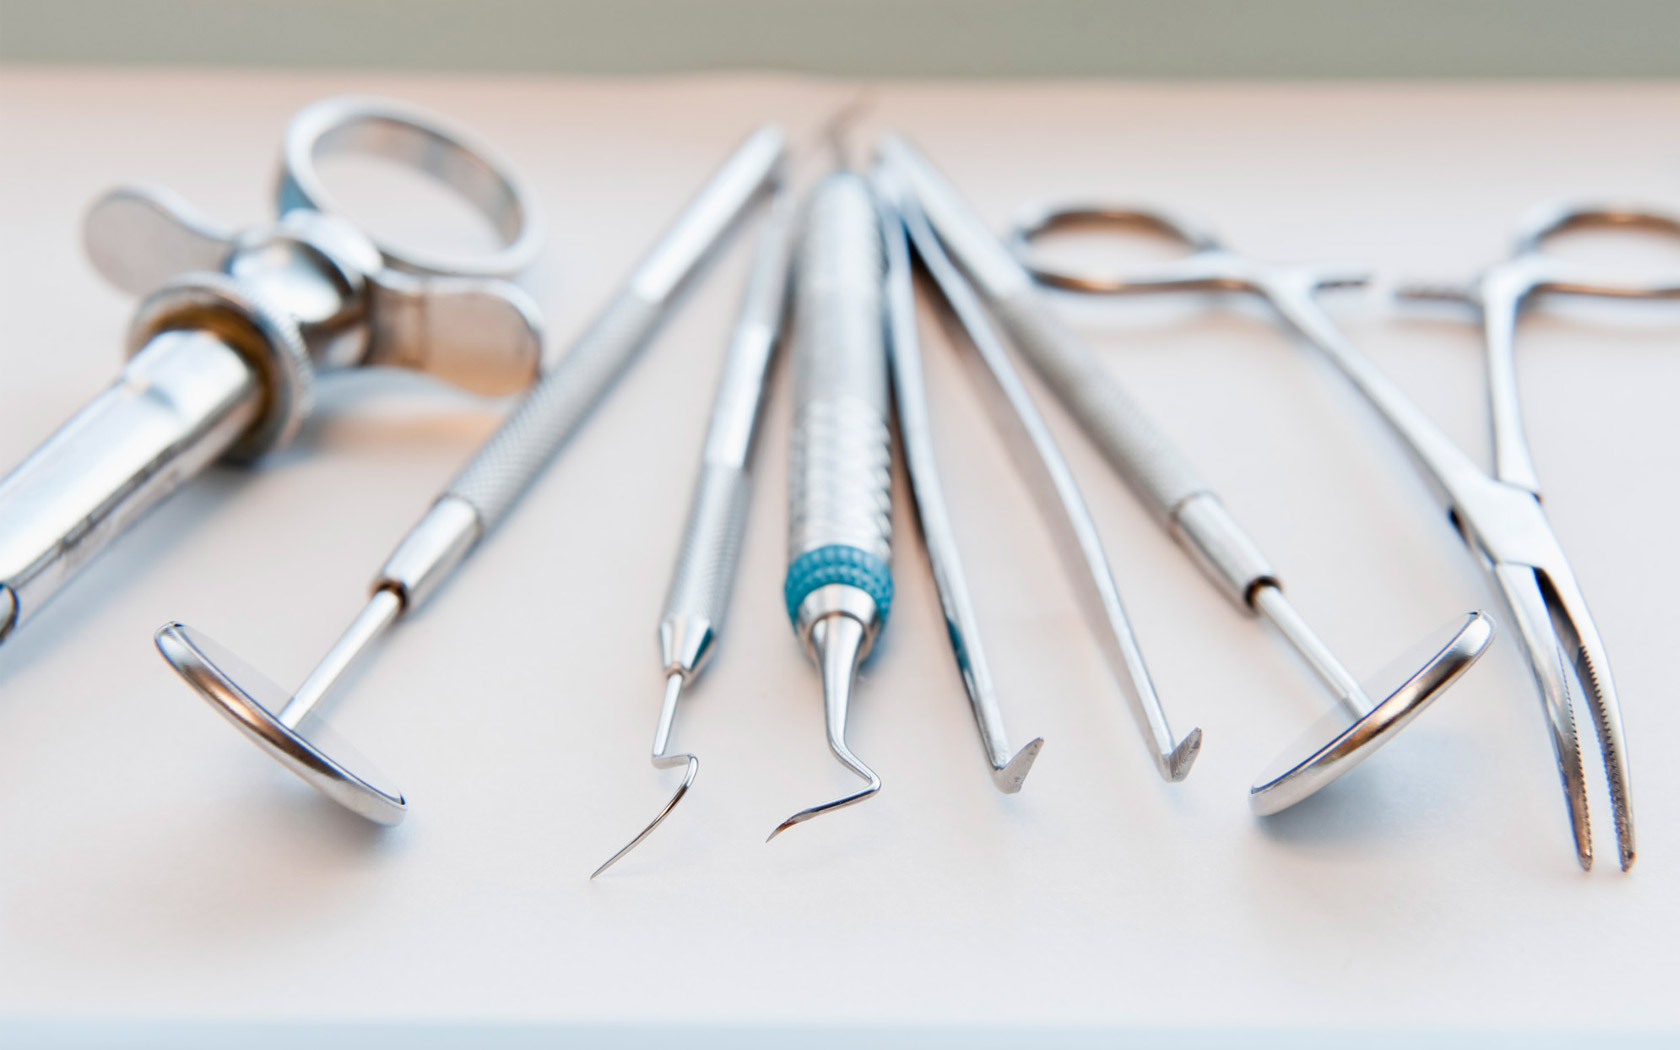 Инструменты для лечения корневых каналов зуба: виды и функционал